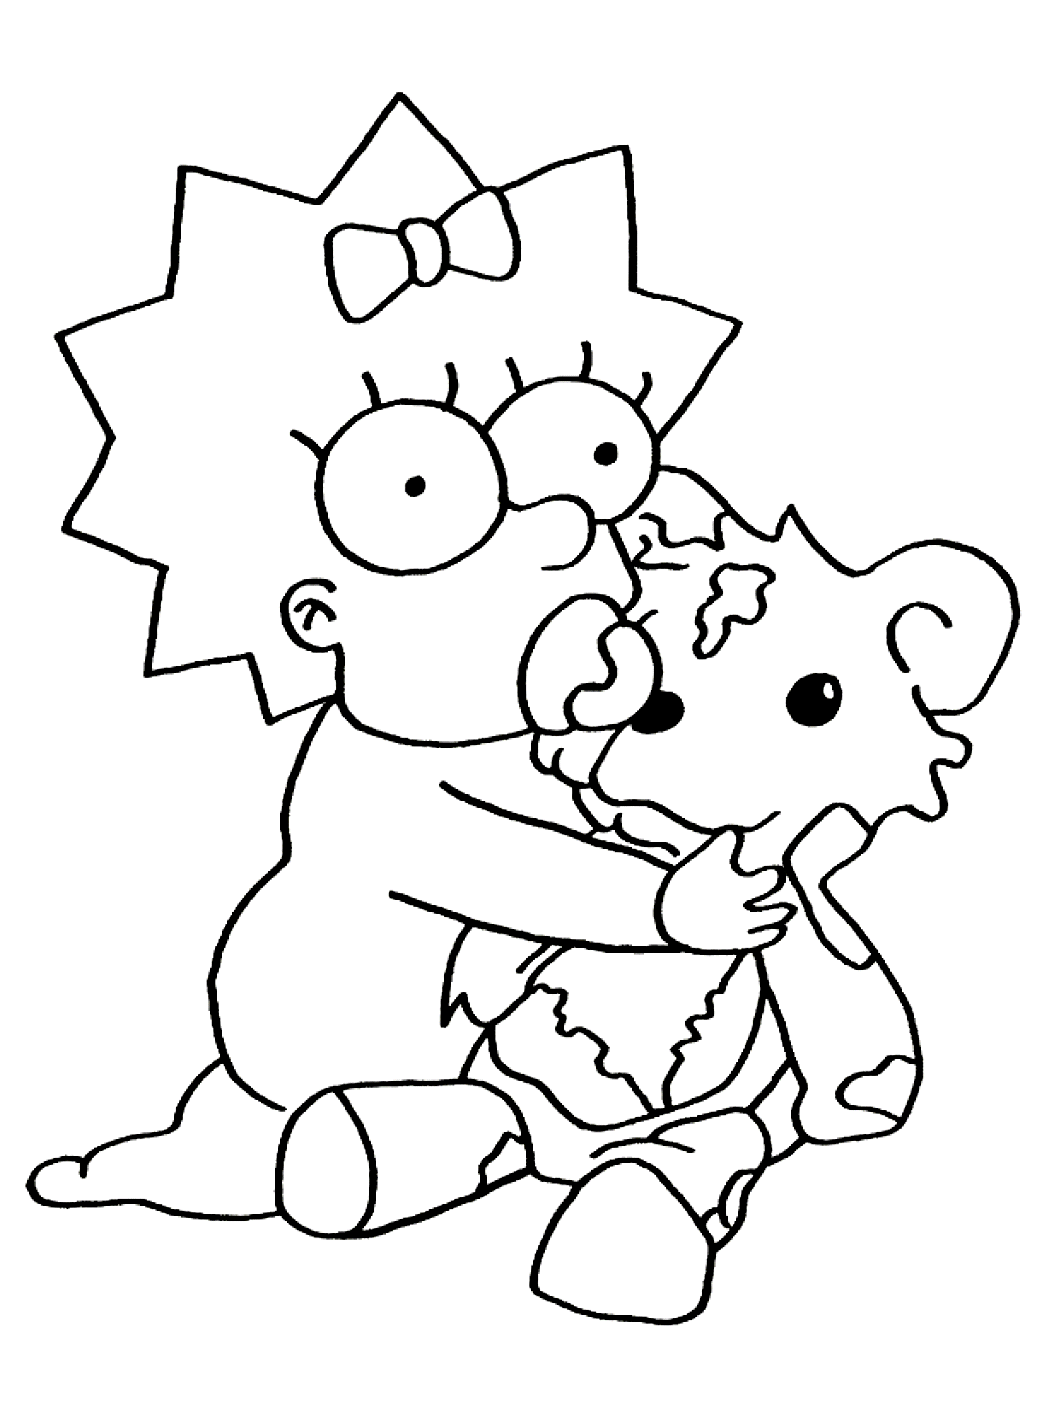 Dibujo de Los Simpson para colorear, fácil para los niños